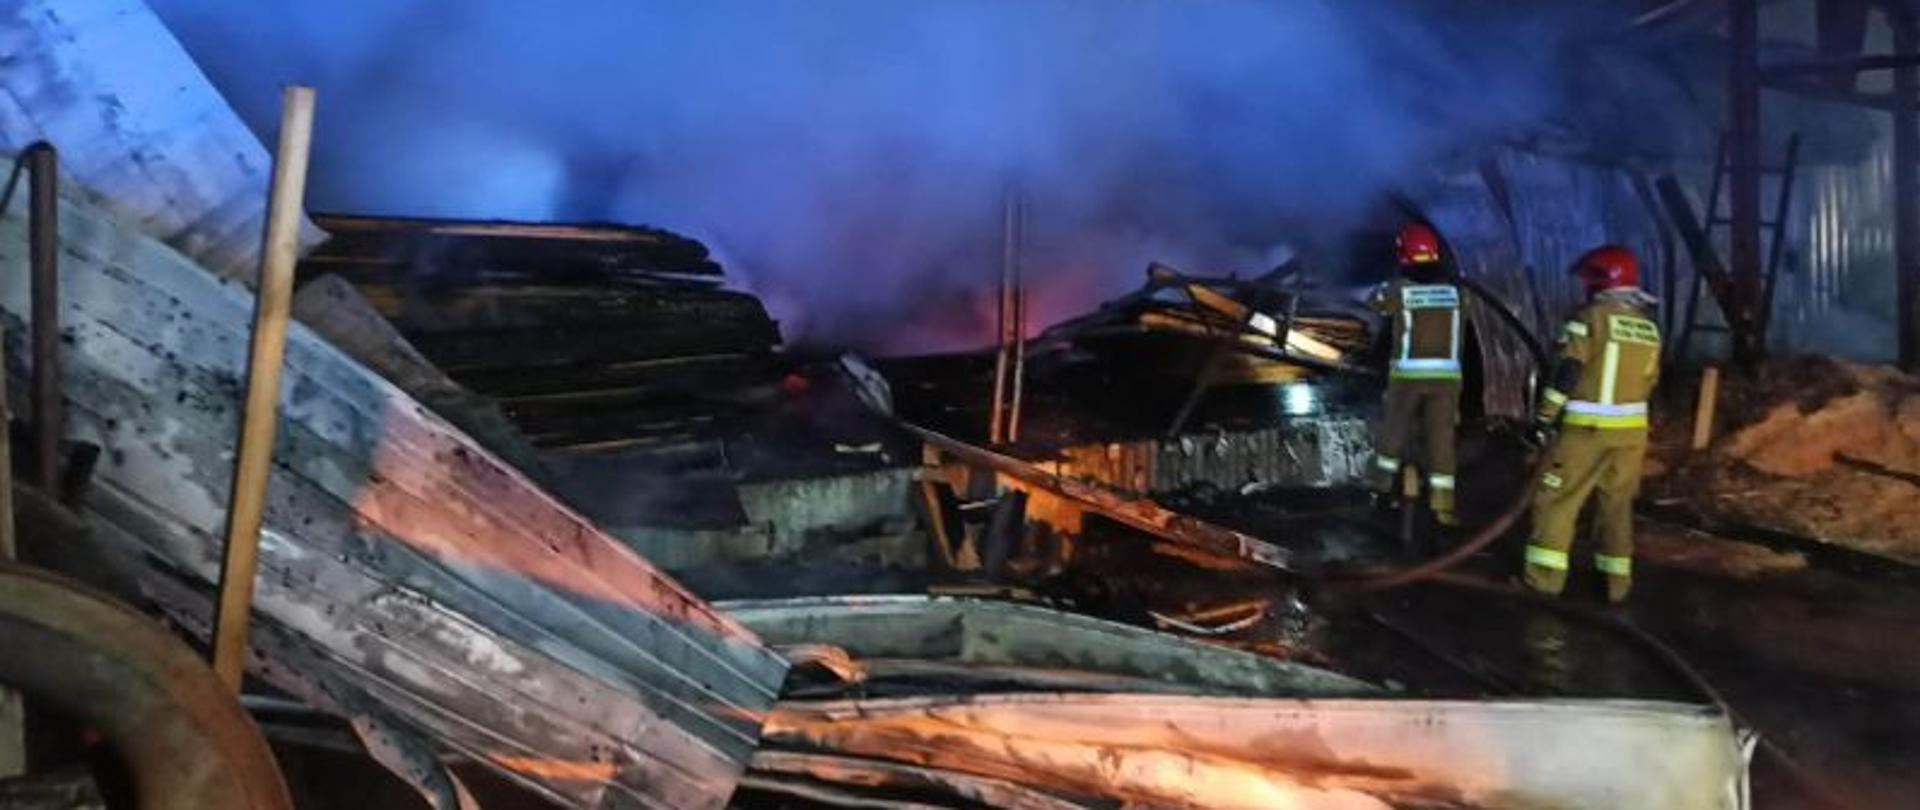 
4.01.2023 po godzinie 2:00 doszło do dużego pożaru budynku stolarni w miejscowości Simoradz, gmina Dębowiec. Na szczęście w wyniku tego zdarzenia nie było osób poszkodowanych.
